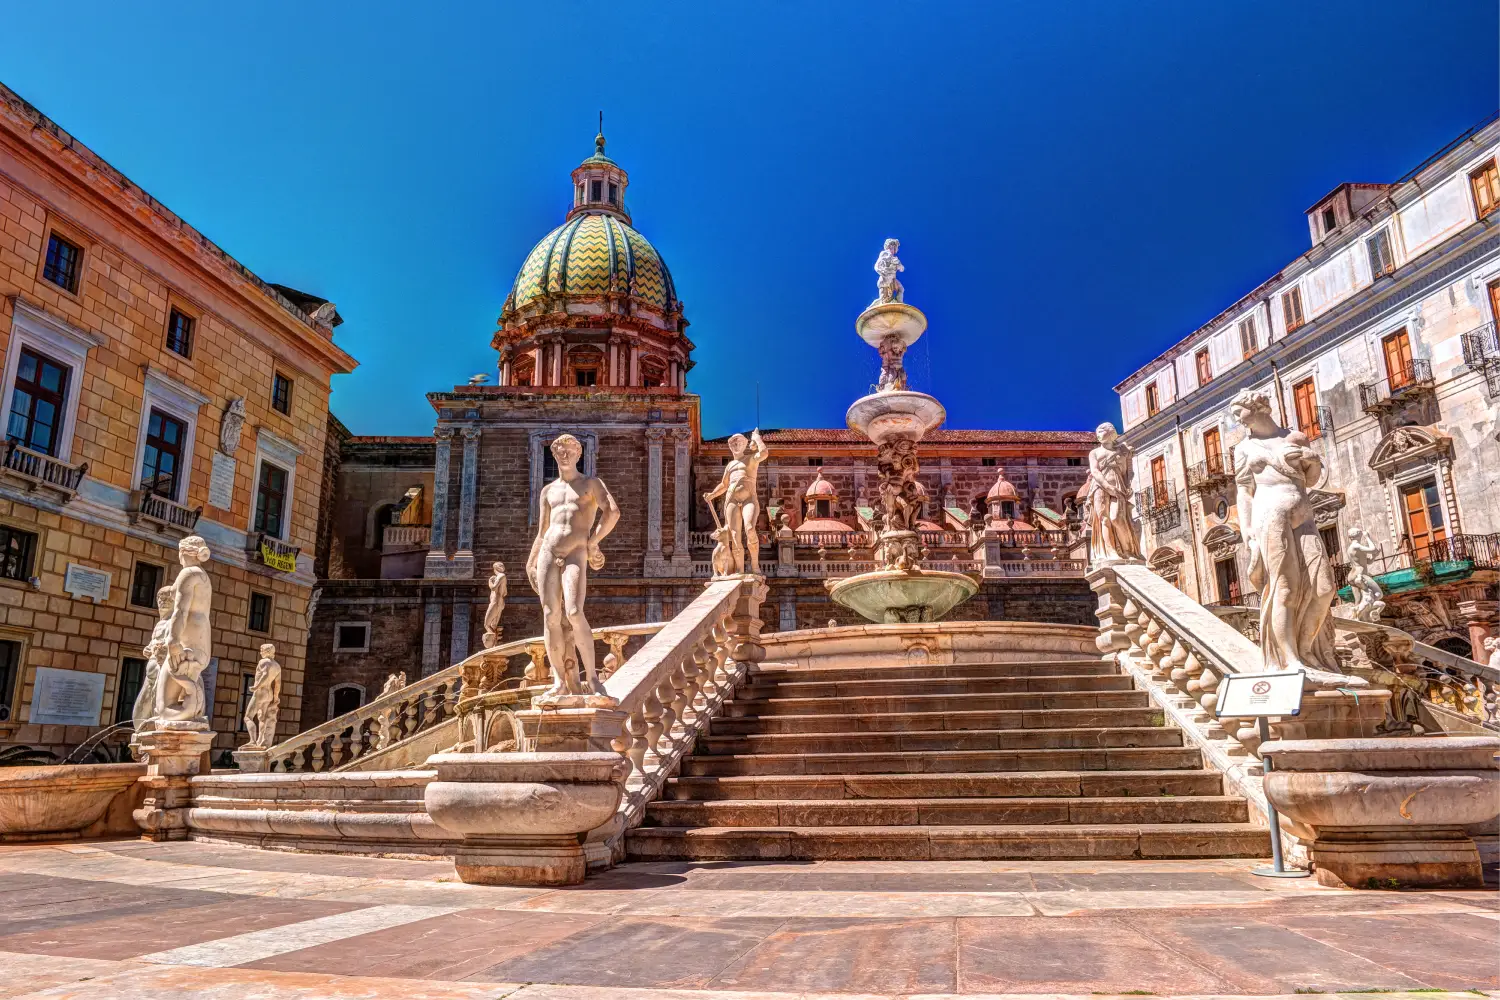 Fountain Of Shame On Baroque Piazza Pretoria in Palermo, Sicily